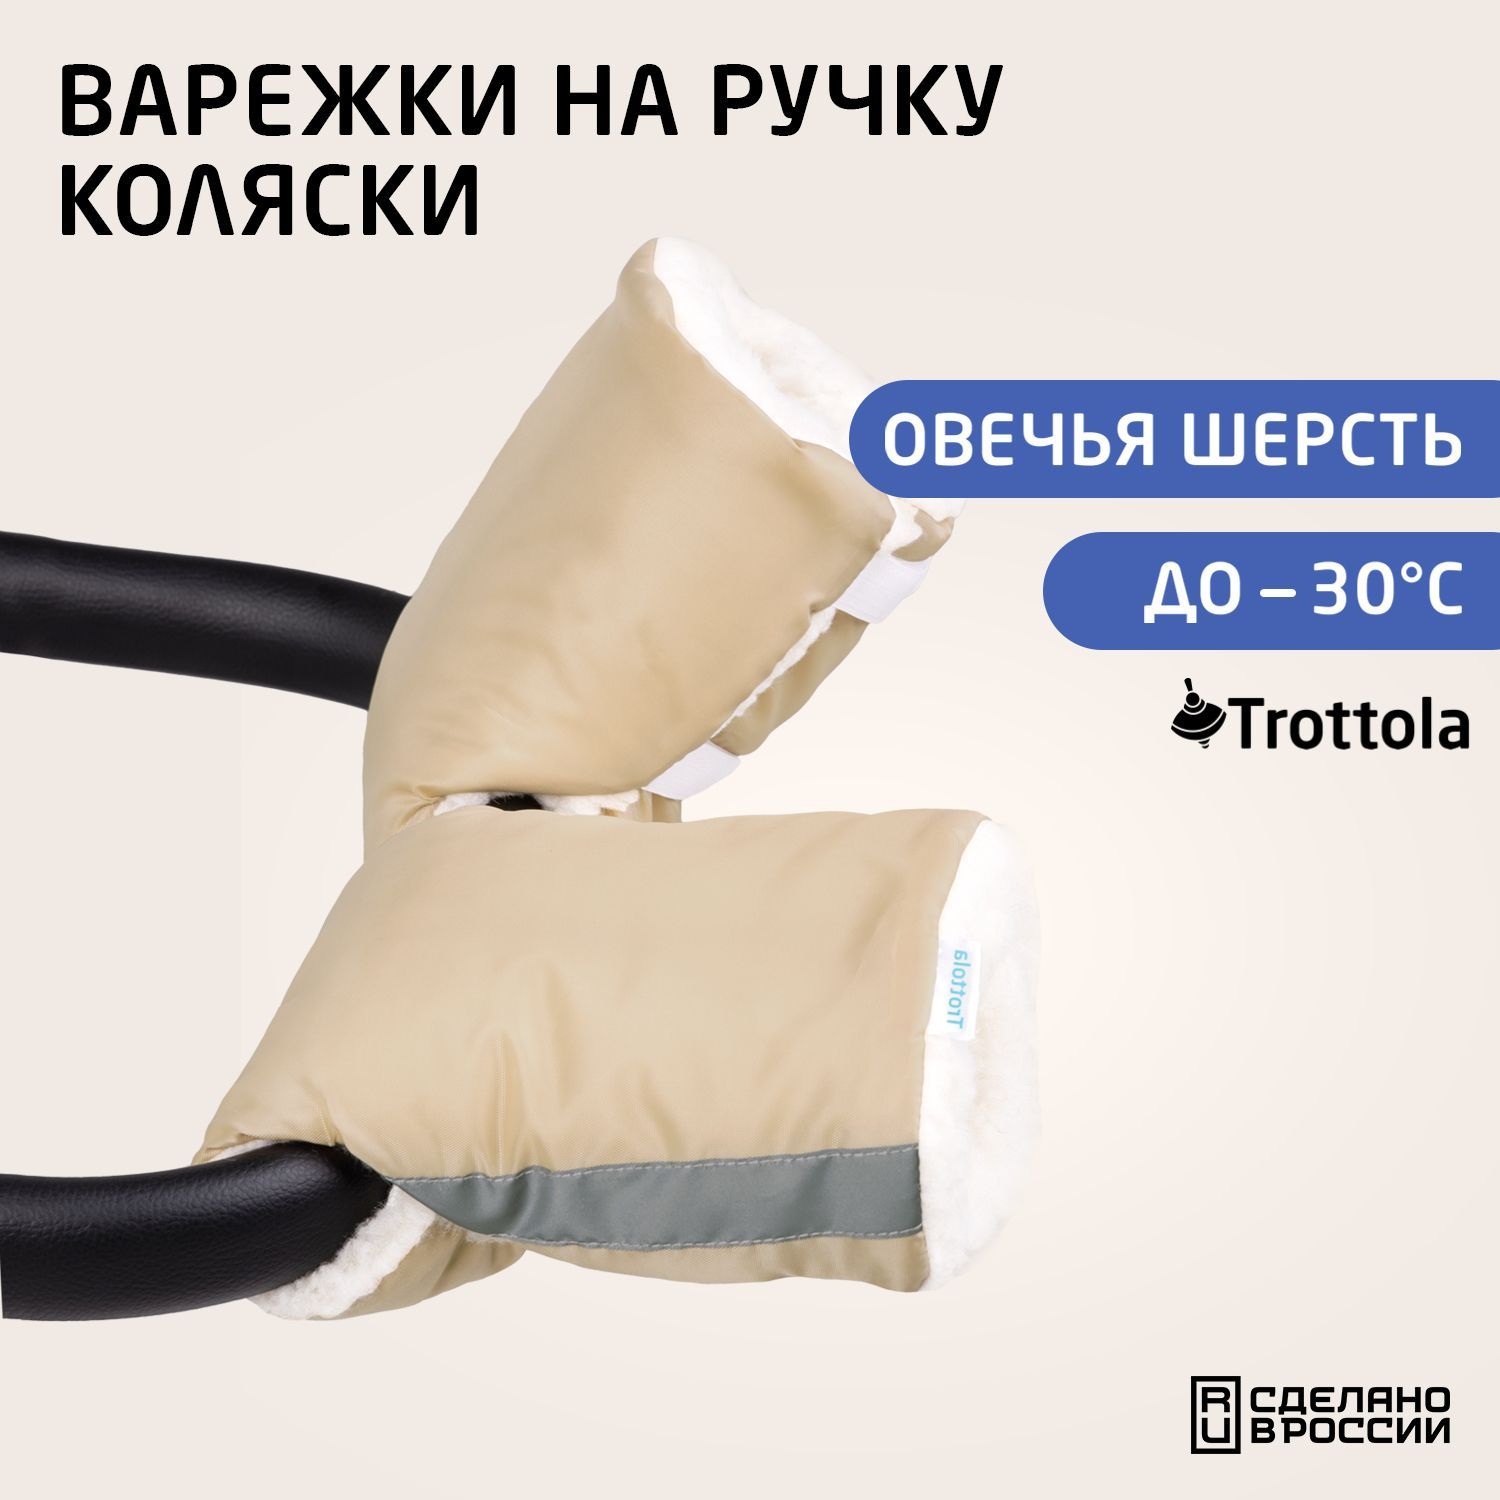 Варежки на коляску - купить рукавички для коляски в интернет-магазине hb-crm.ru